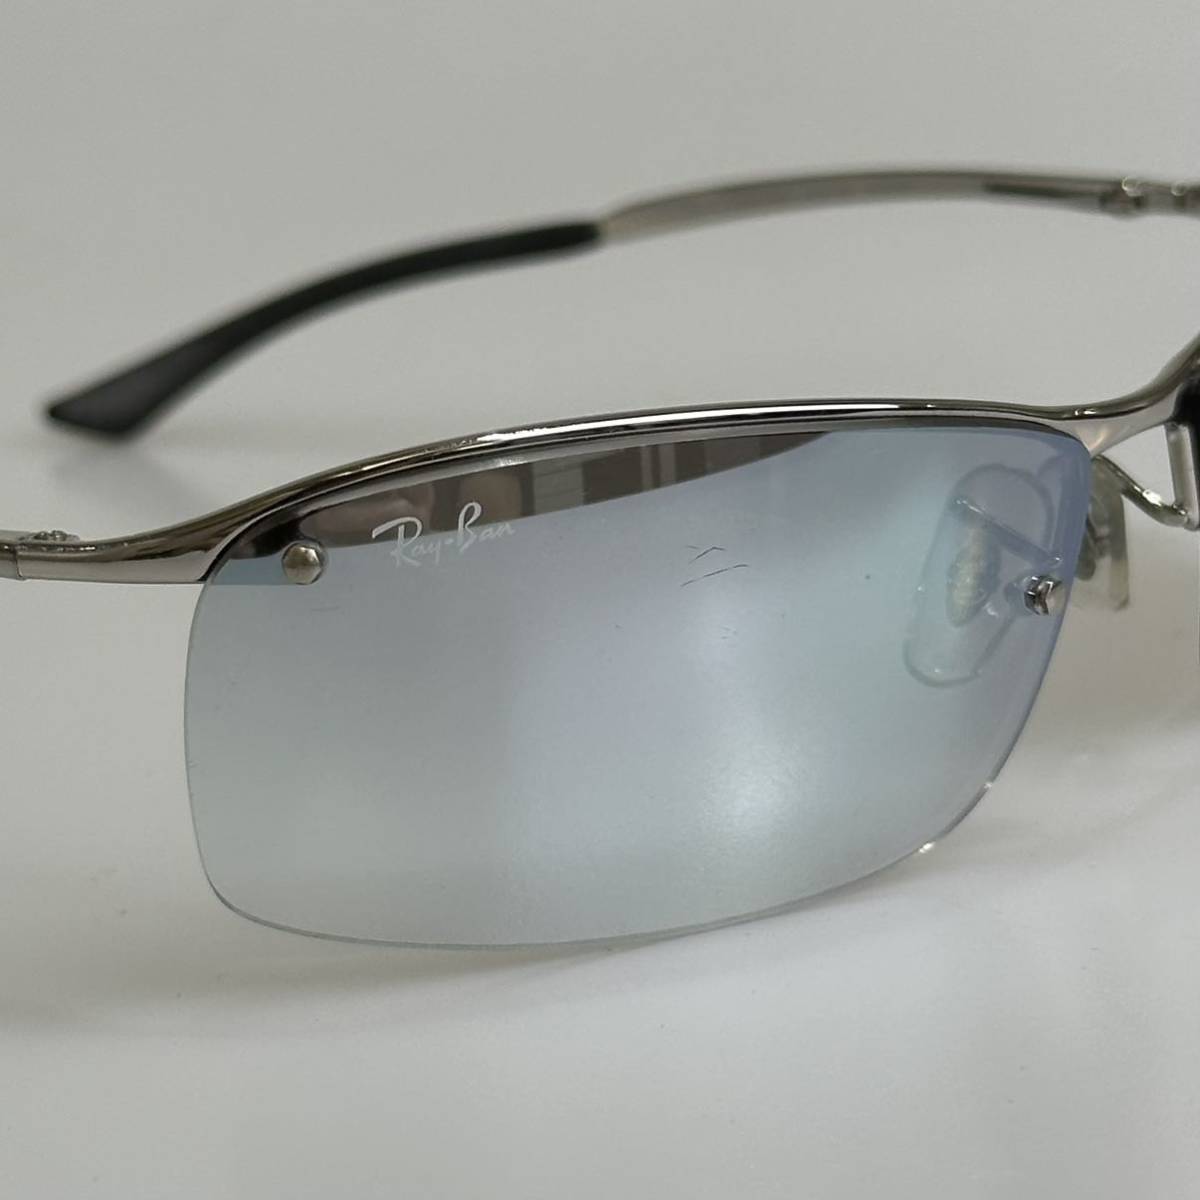  Италия производства снят с производства товар RayBan Ray-Ban RB3183 003/Z1 градация зеркало линзы солнцезащитные очки 